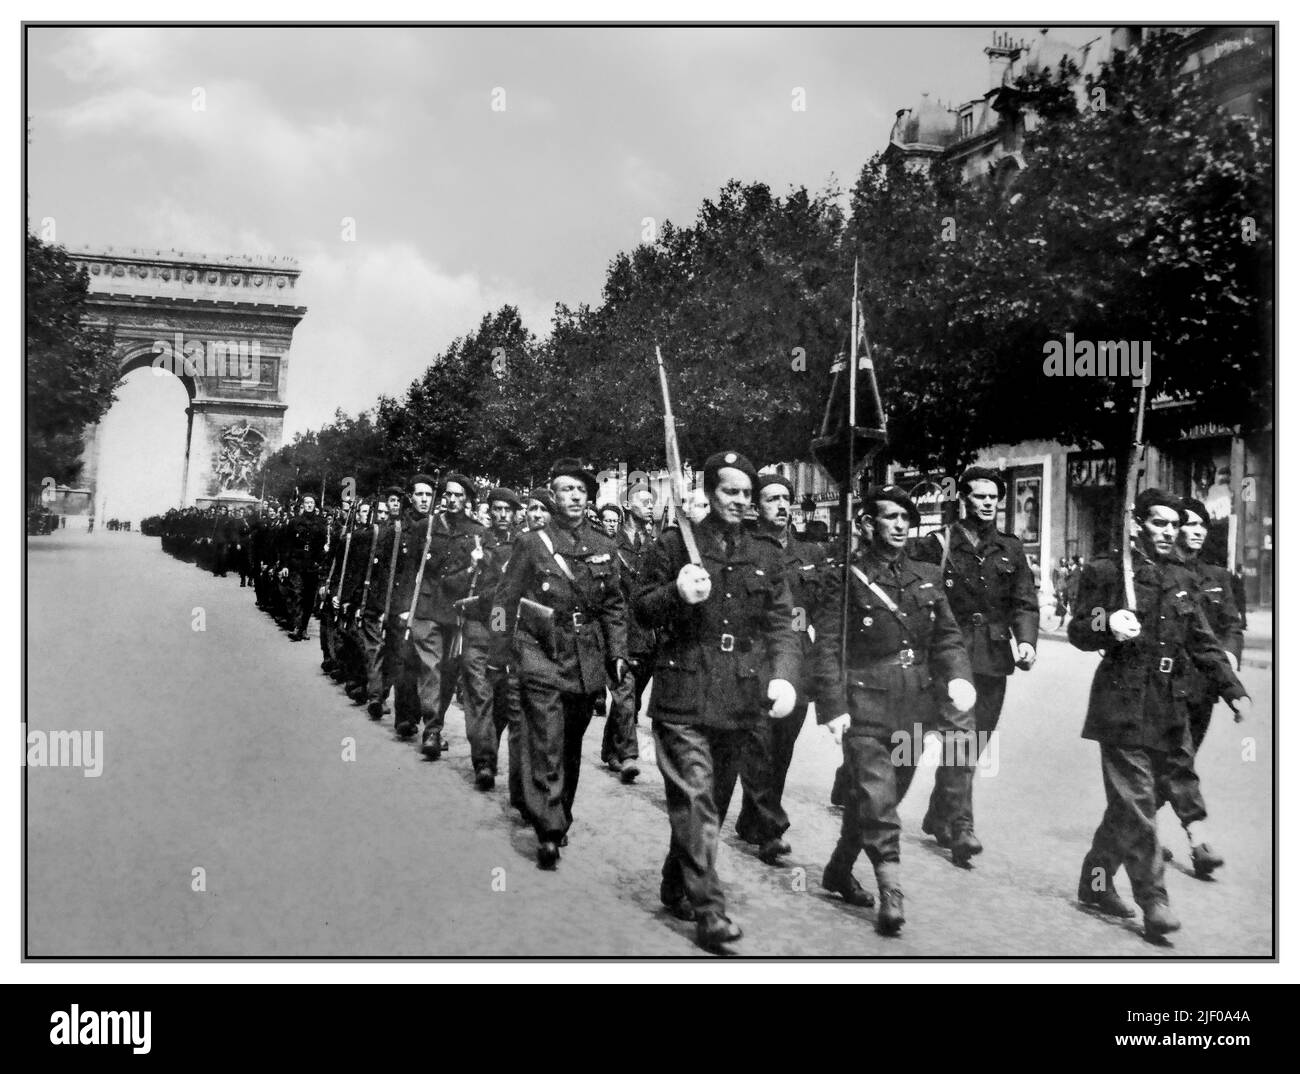 Vichy France Nazi-Kollaborateure der französischen Miliz Bataillon-Armee marschieren die Champs-Elysées mit dem Triumphbogen im Hintergrund ab Paris 1940s WW2 Frankreich Stockfoto